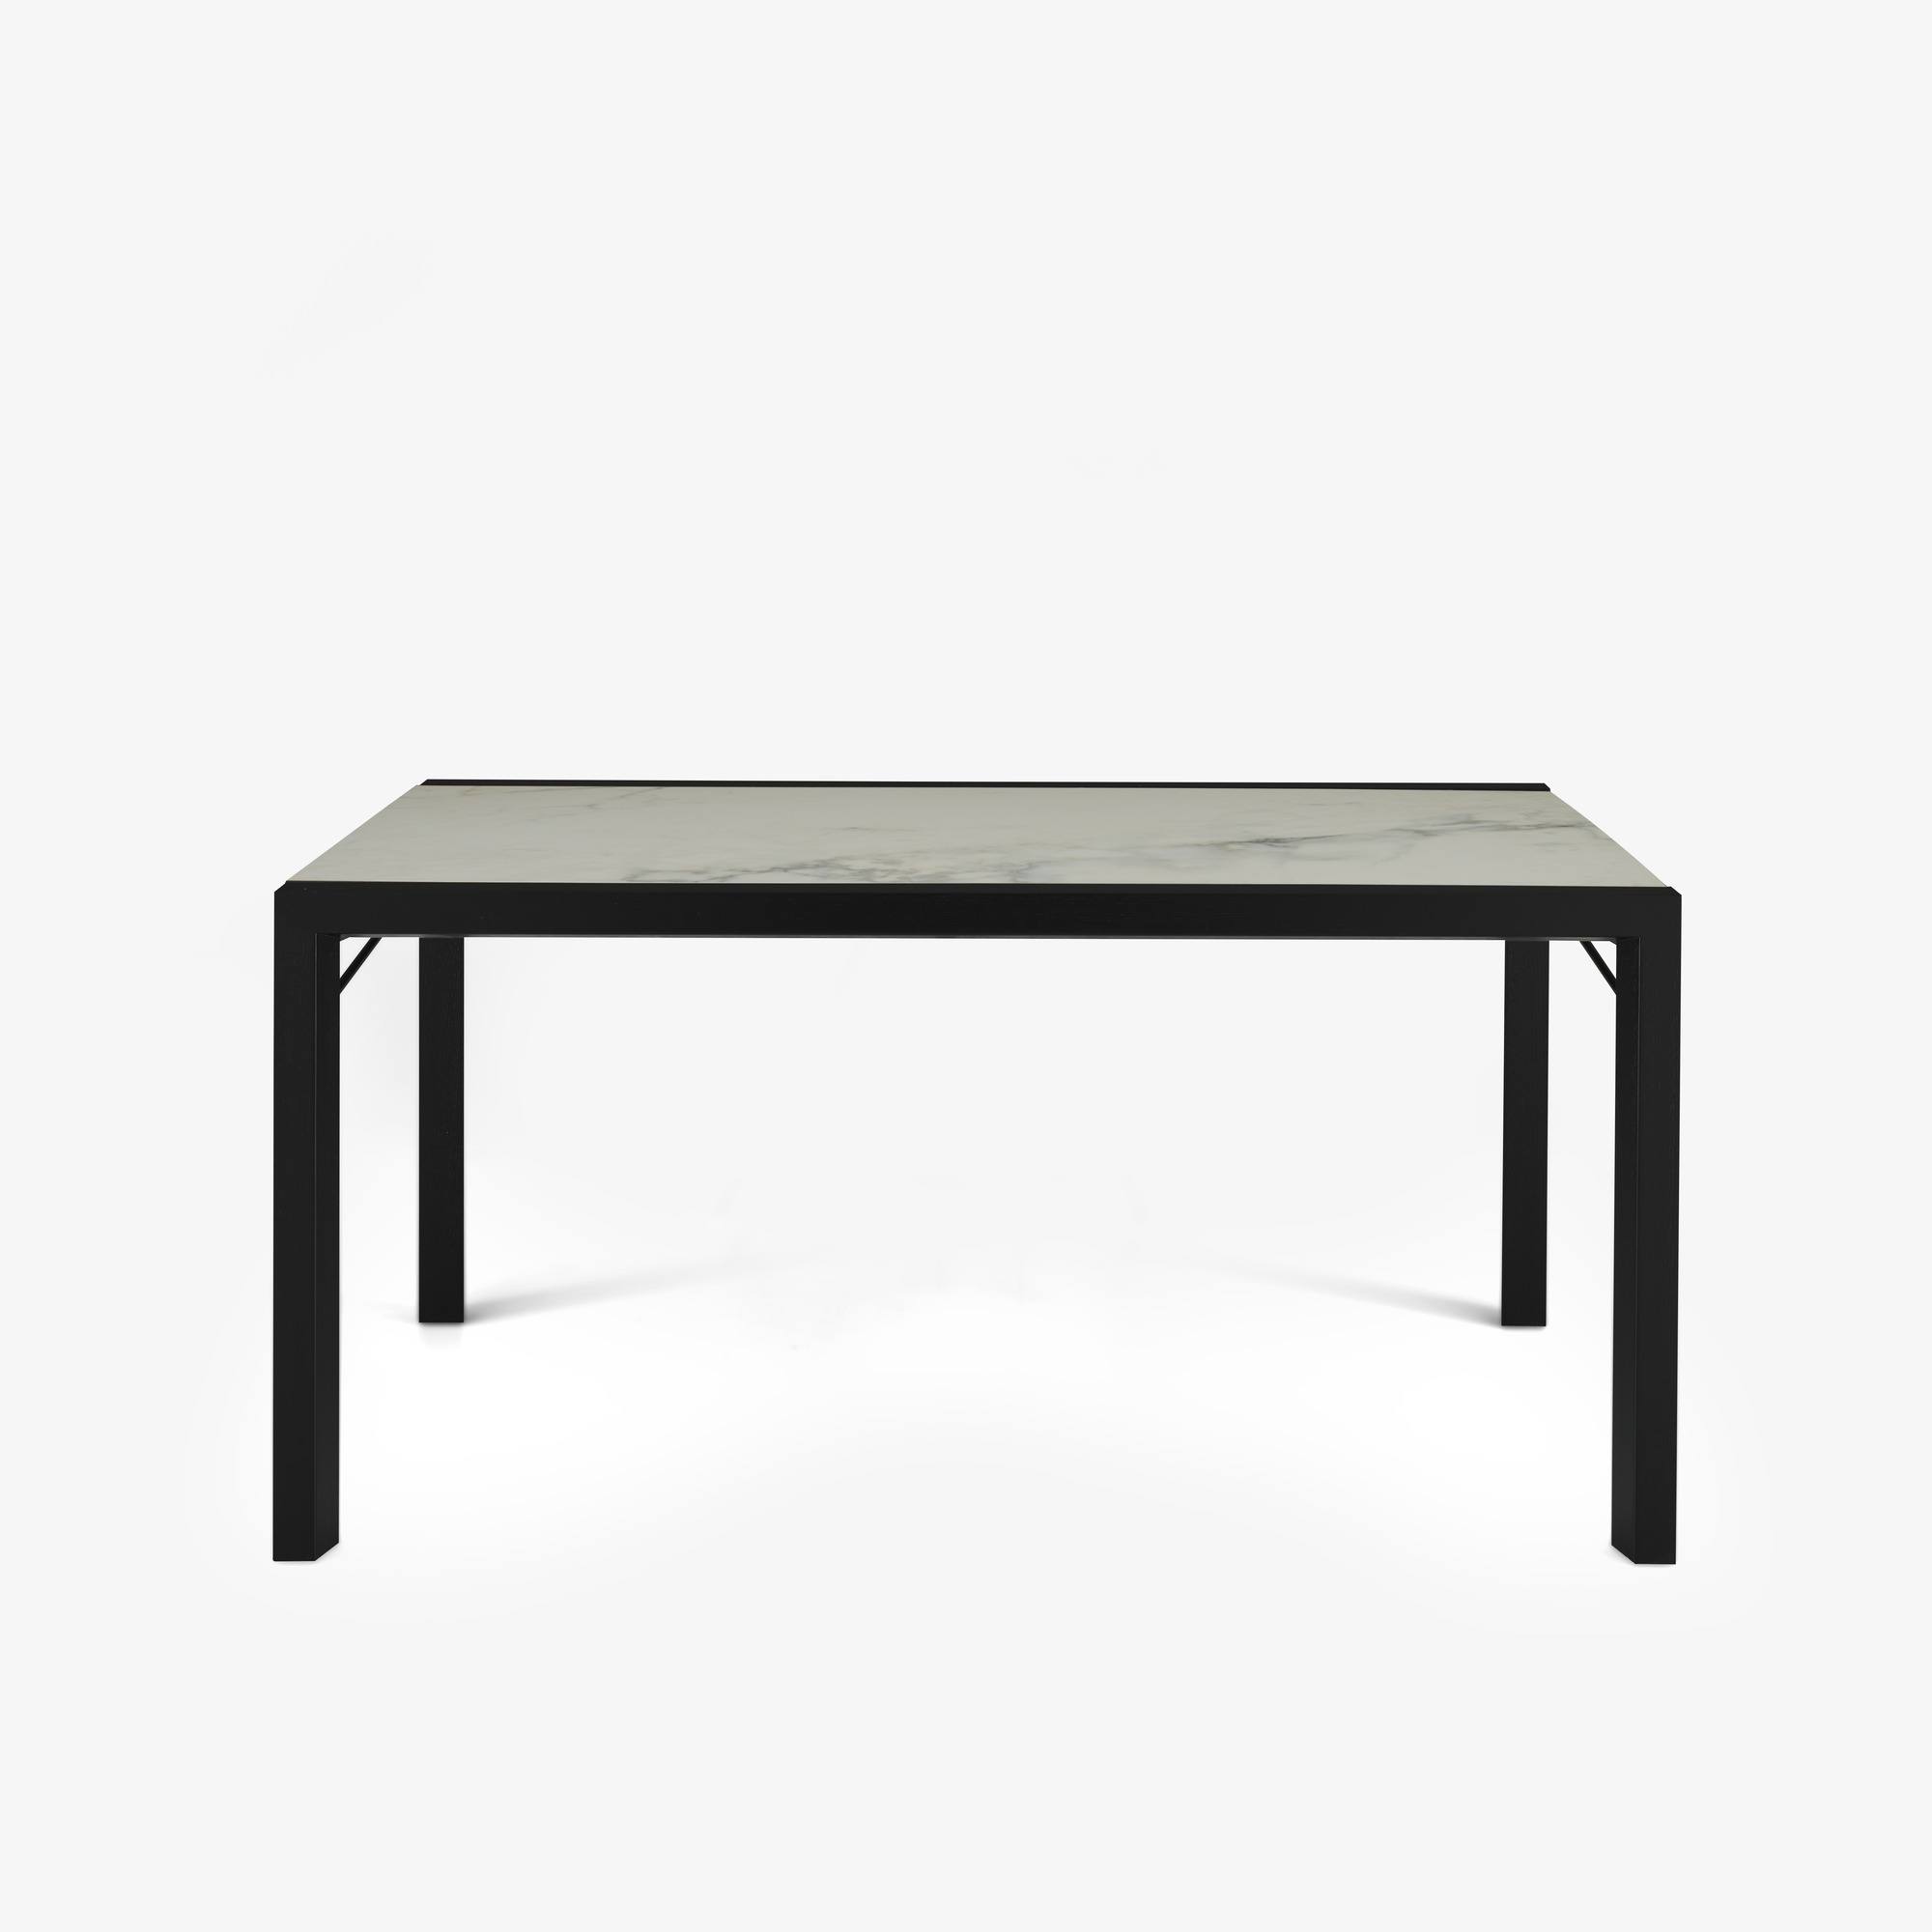 Image Mesa de comedor tablero gres cerámico aspecto mármol blanco patas de fresno teñido negro 1